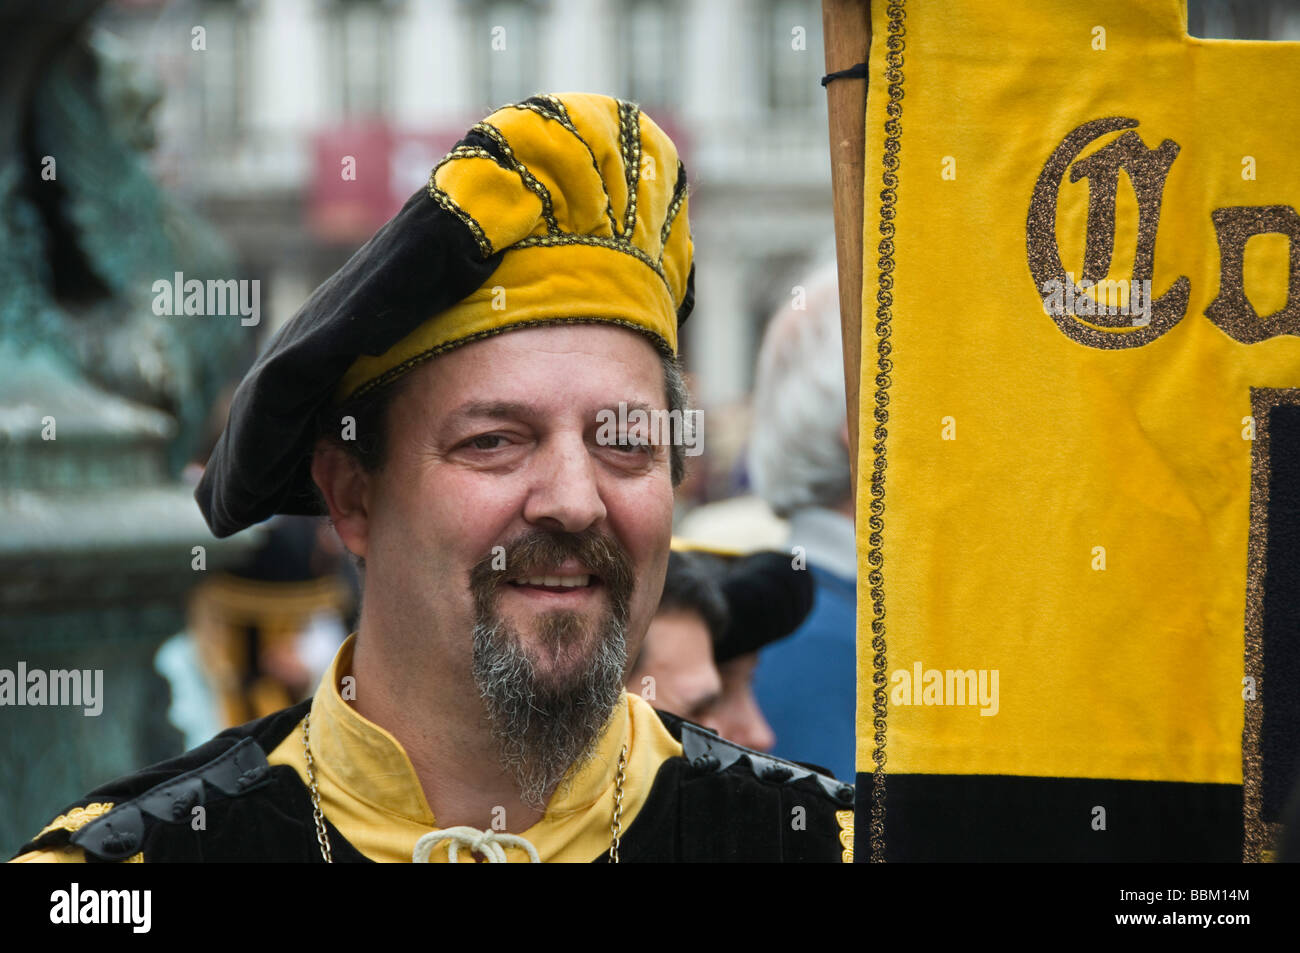 Uomo in costume in parata in Piazza San Marco Venezia Italia Foto Stock